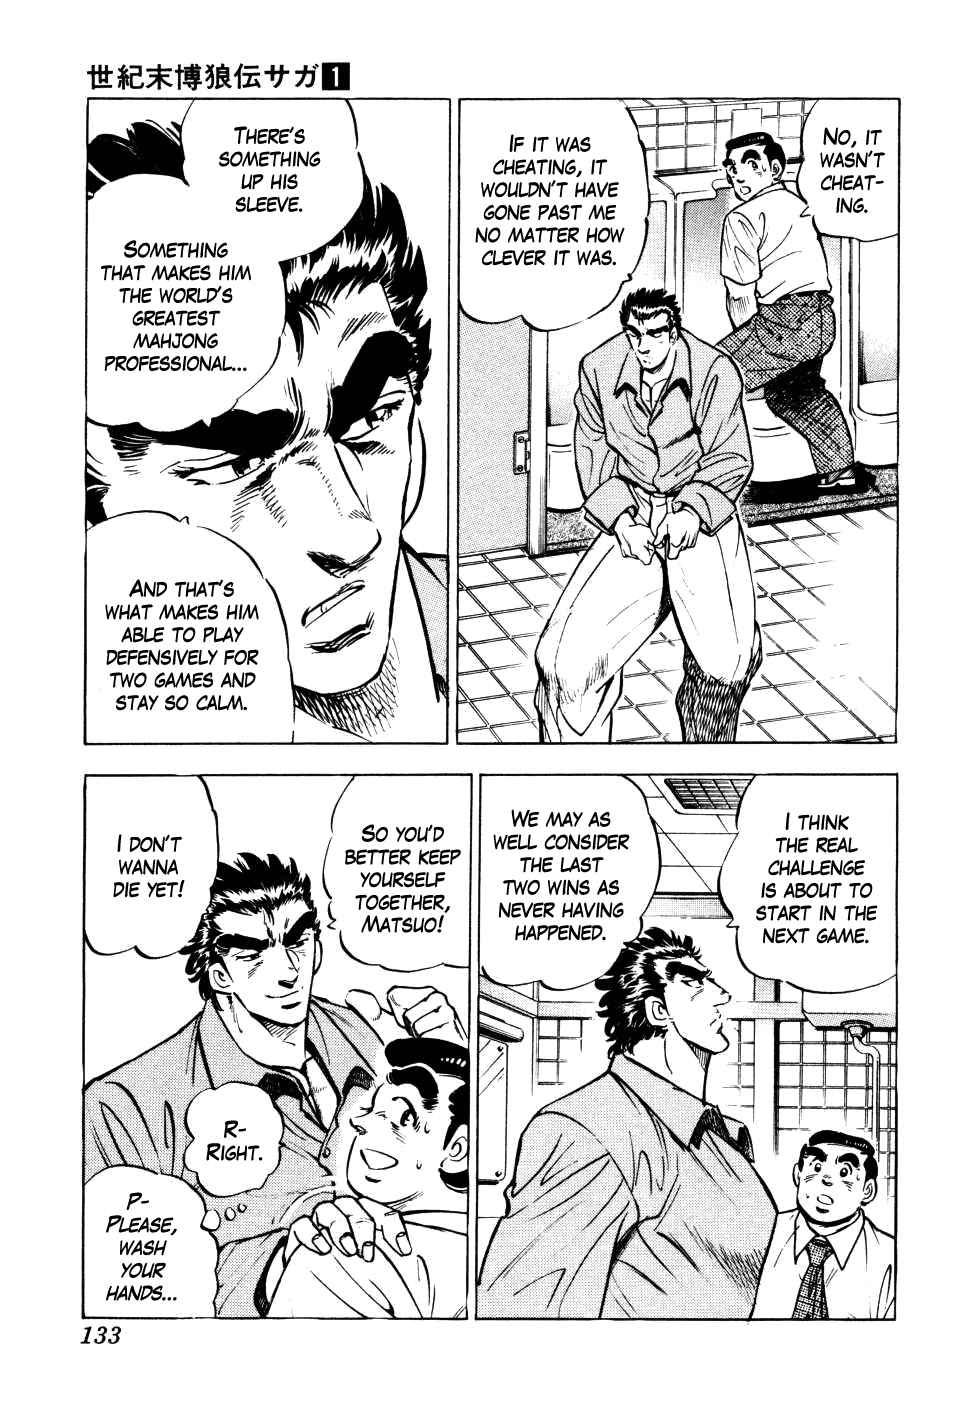 Seikimatsu Bakuroden Saga Vol.1 Ch.5